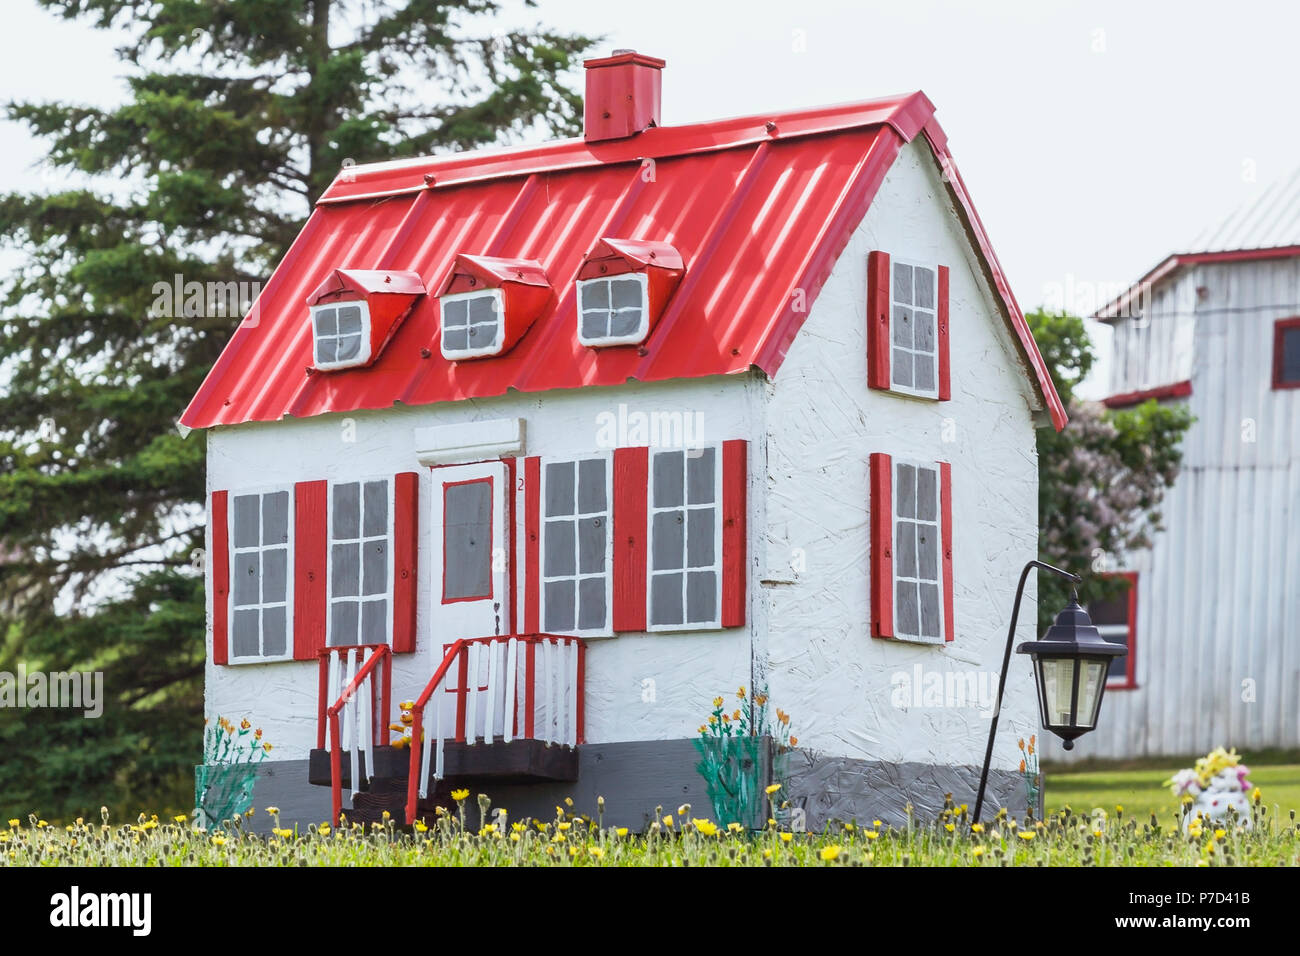 Blanc avec garniture rouge reproduction miniature d'une vieille maison de style cottage Canadiana façade dans un champ de fleurs de pissenlit jaune Banque D'Images